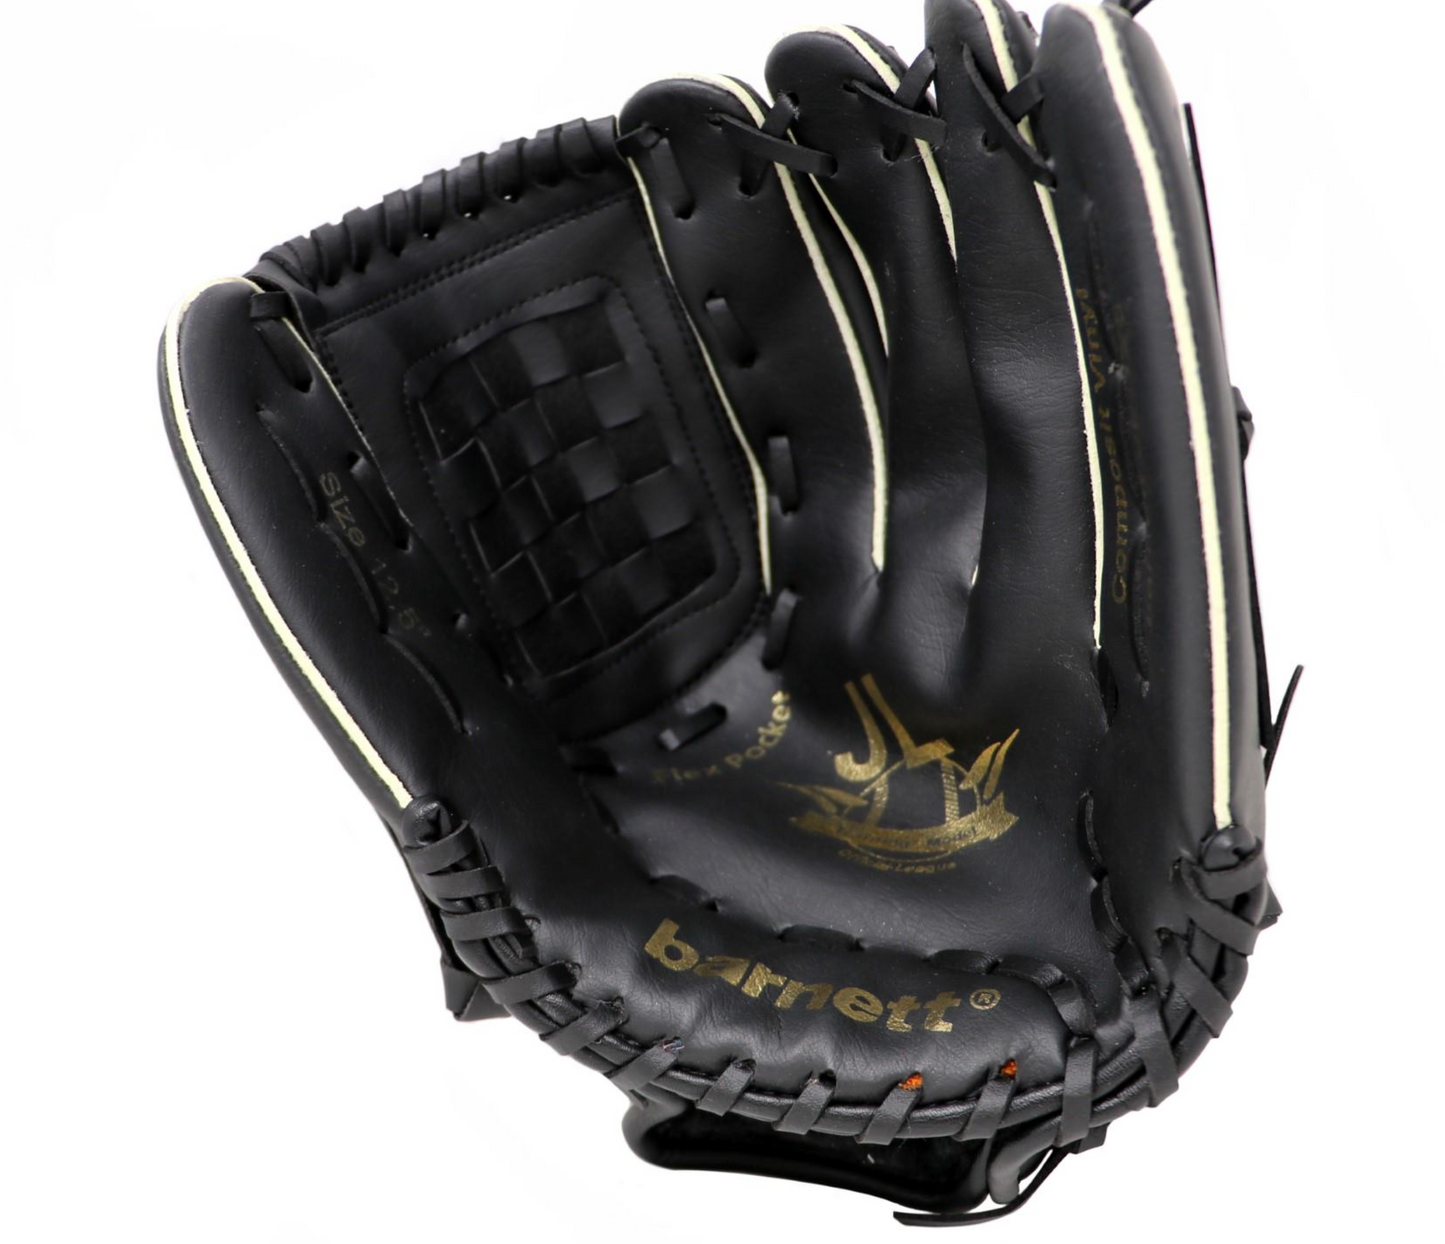 JL-125 Baseballová rukavice pro začátečníky, vinyl, outfield, vel. 12,5, černá